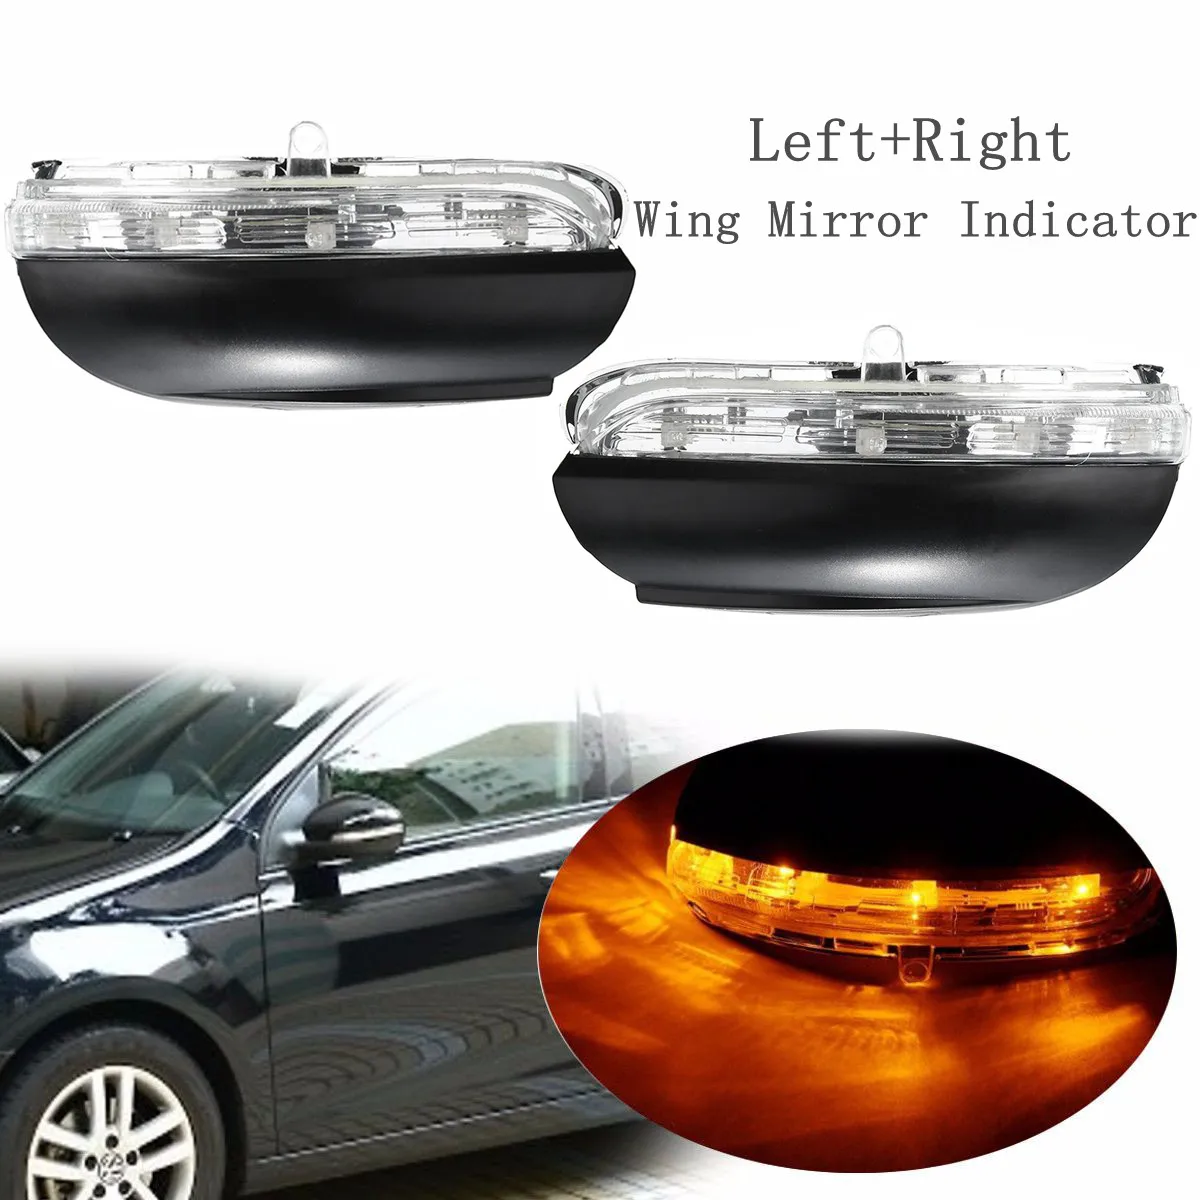 Venstre og Højre Side af Bilen LED Rear View Mirror, kontrollampen For VW Golf MK6 2009-2012 Touran 2009-